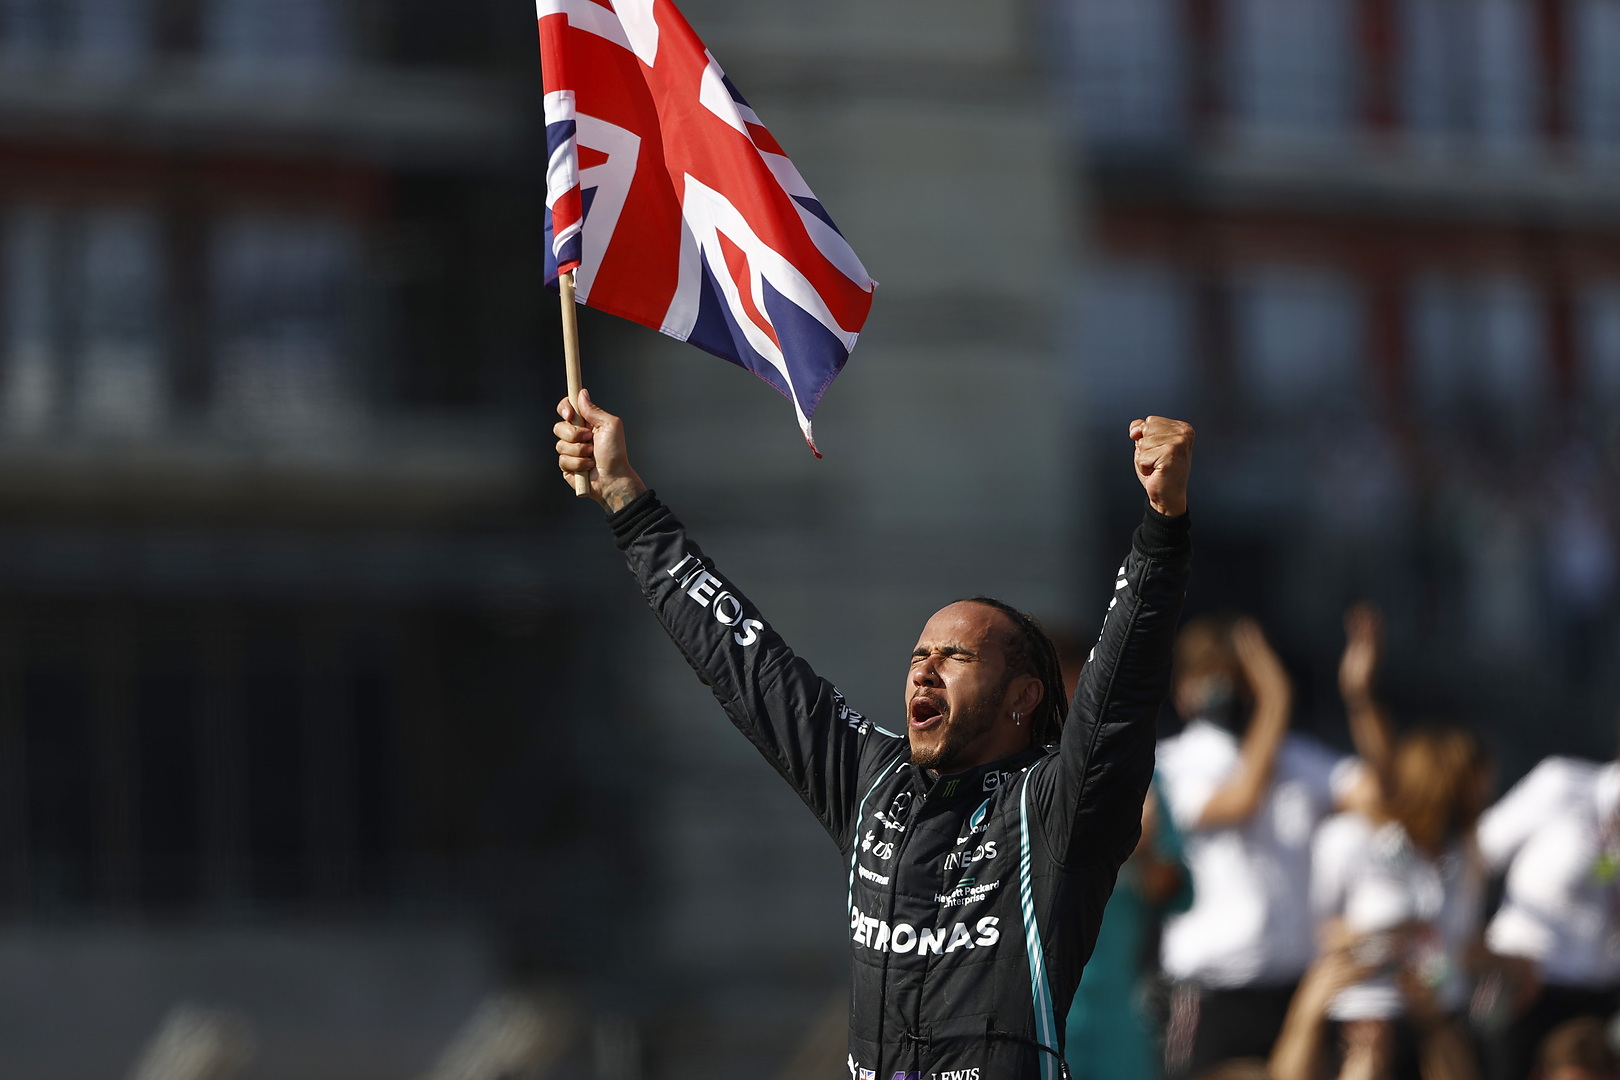 L. Hamiltonas po incidento su M. Verstappenu sulaukė rasistinių užgauliojimų